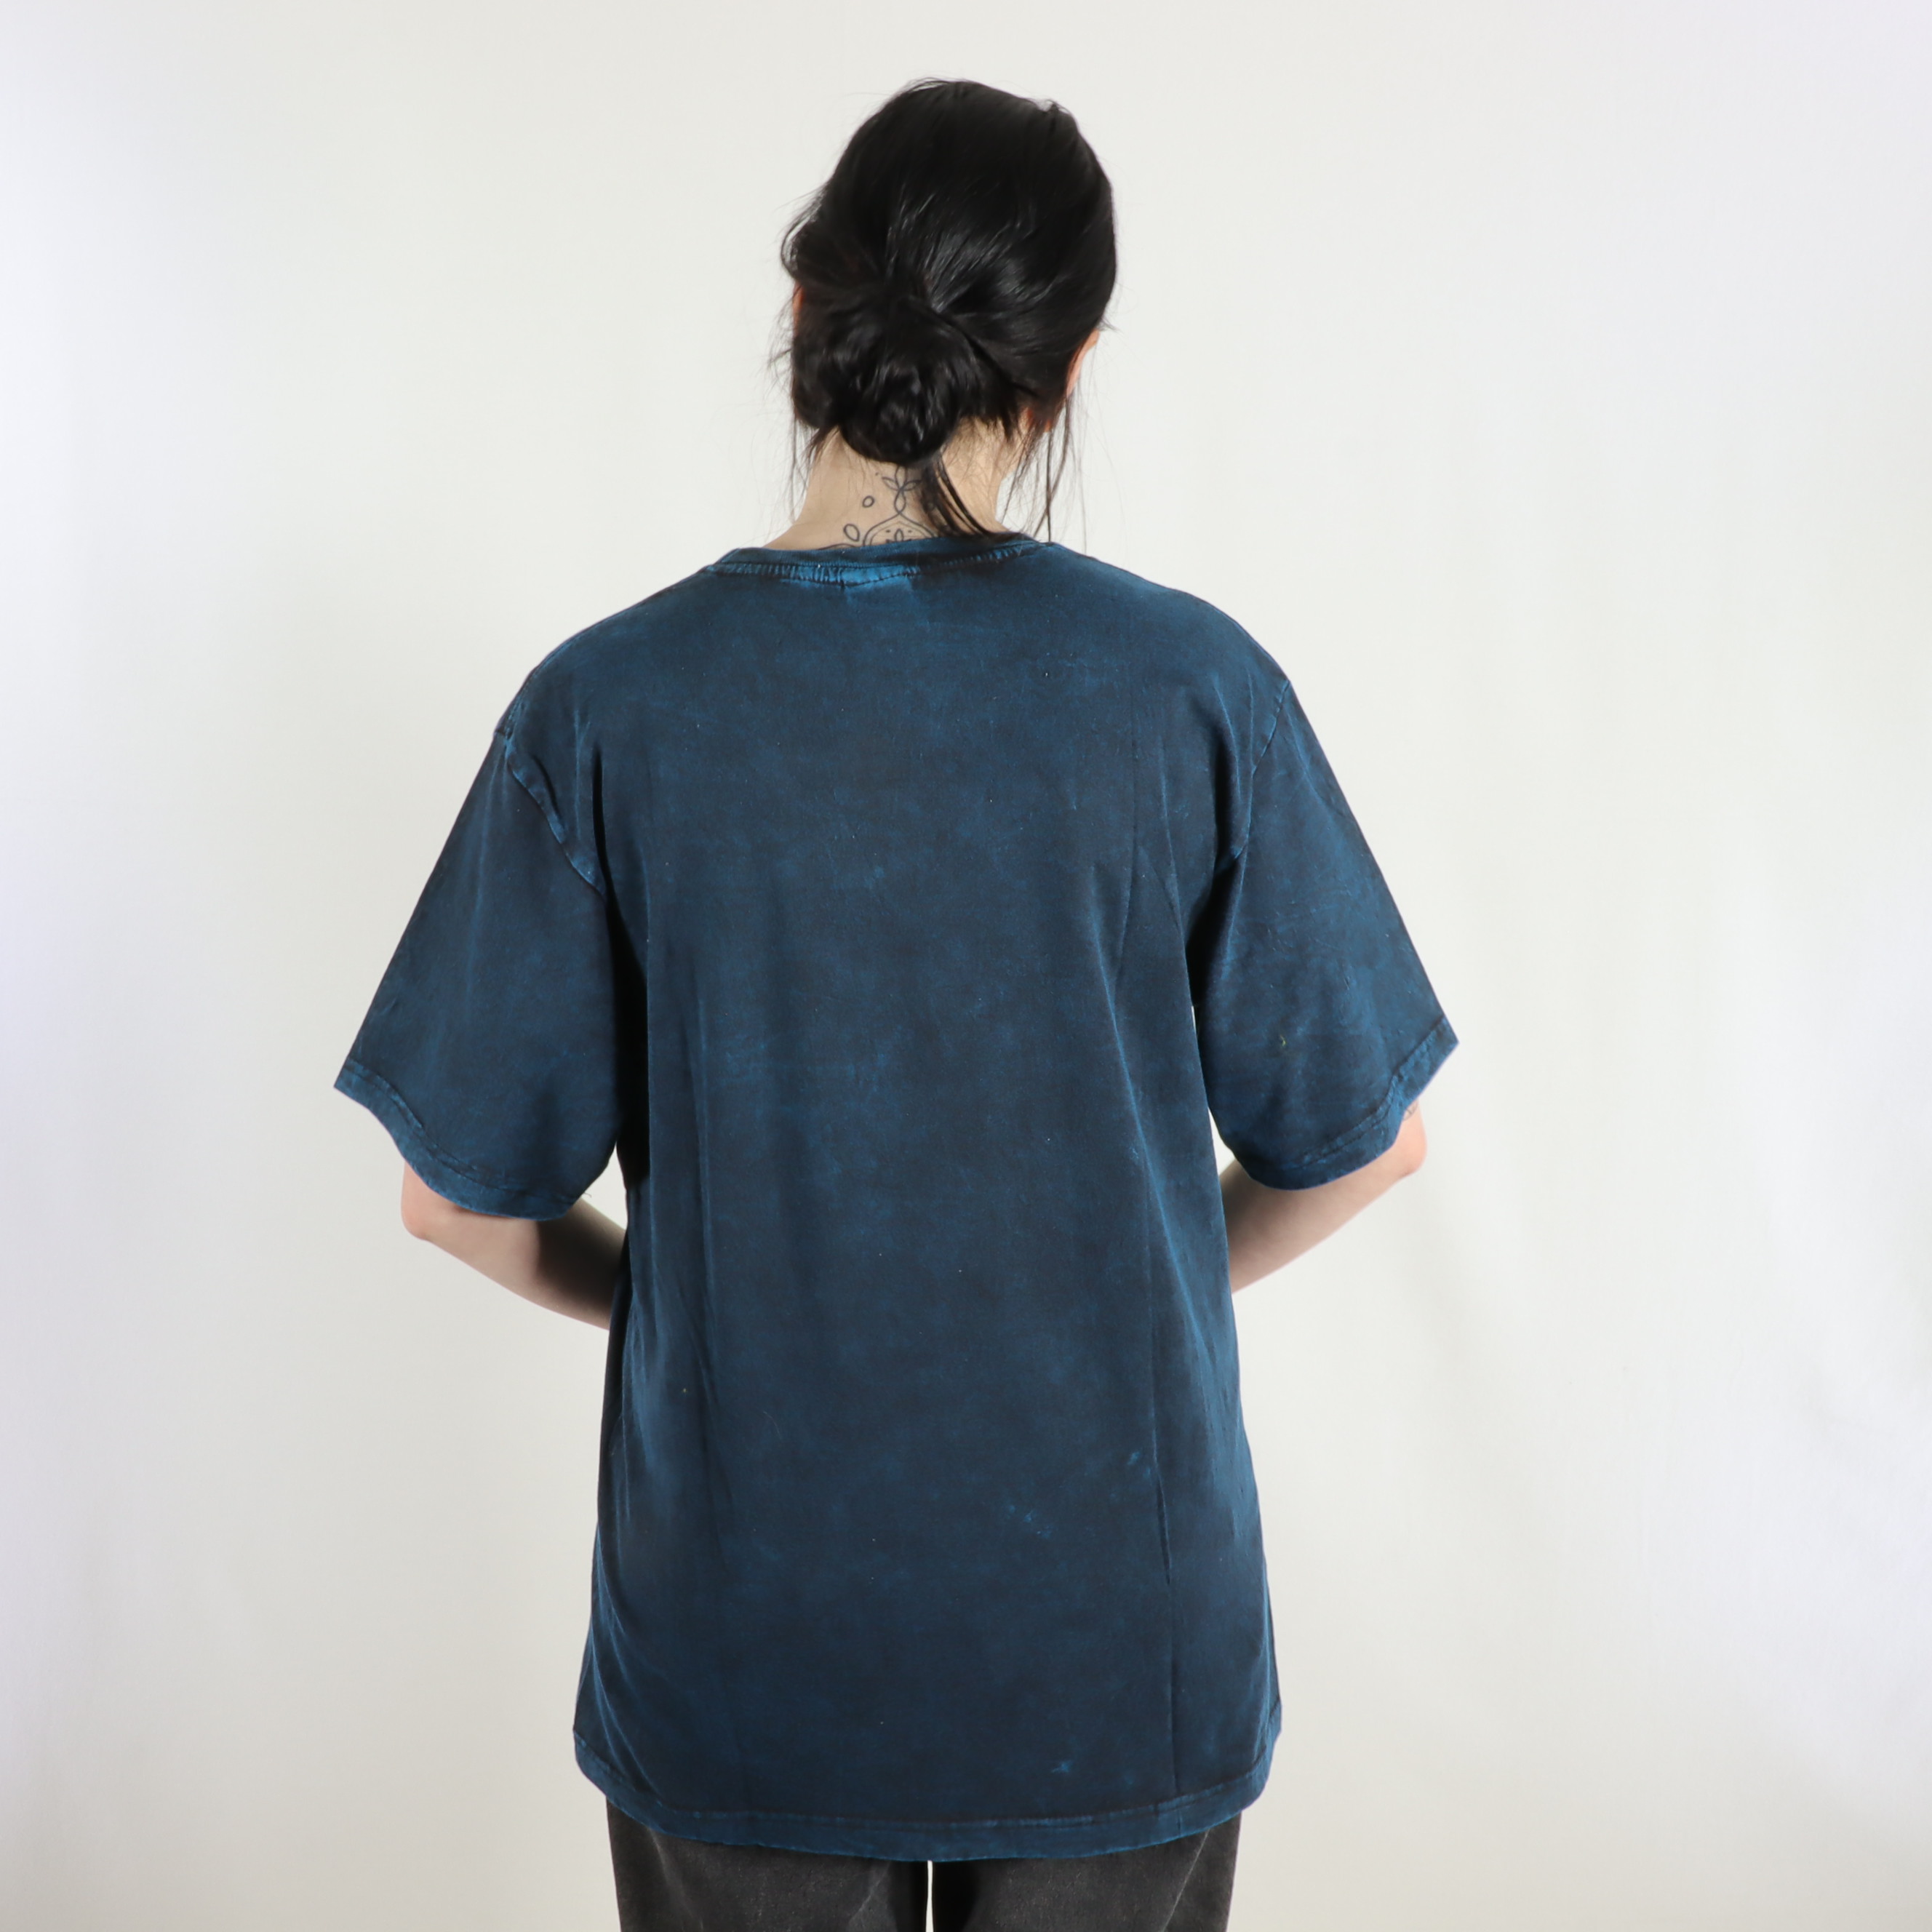 T-Shirt mit großem Om Aufdruck - 100% Baumwolle - im Stonewash Used Look Design - bequem und lässig - Fair gehandelt aus Nepal